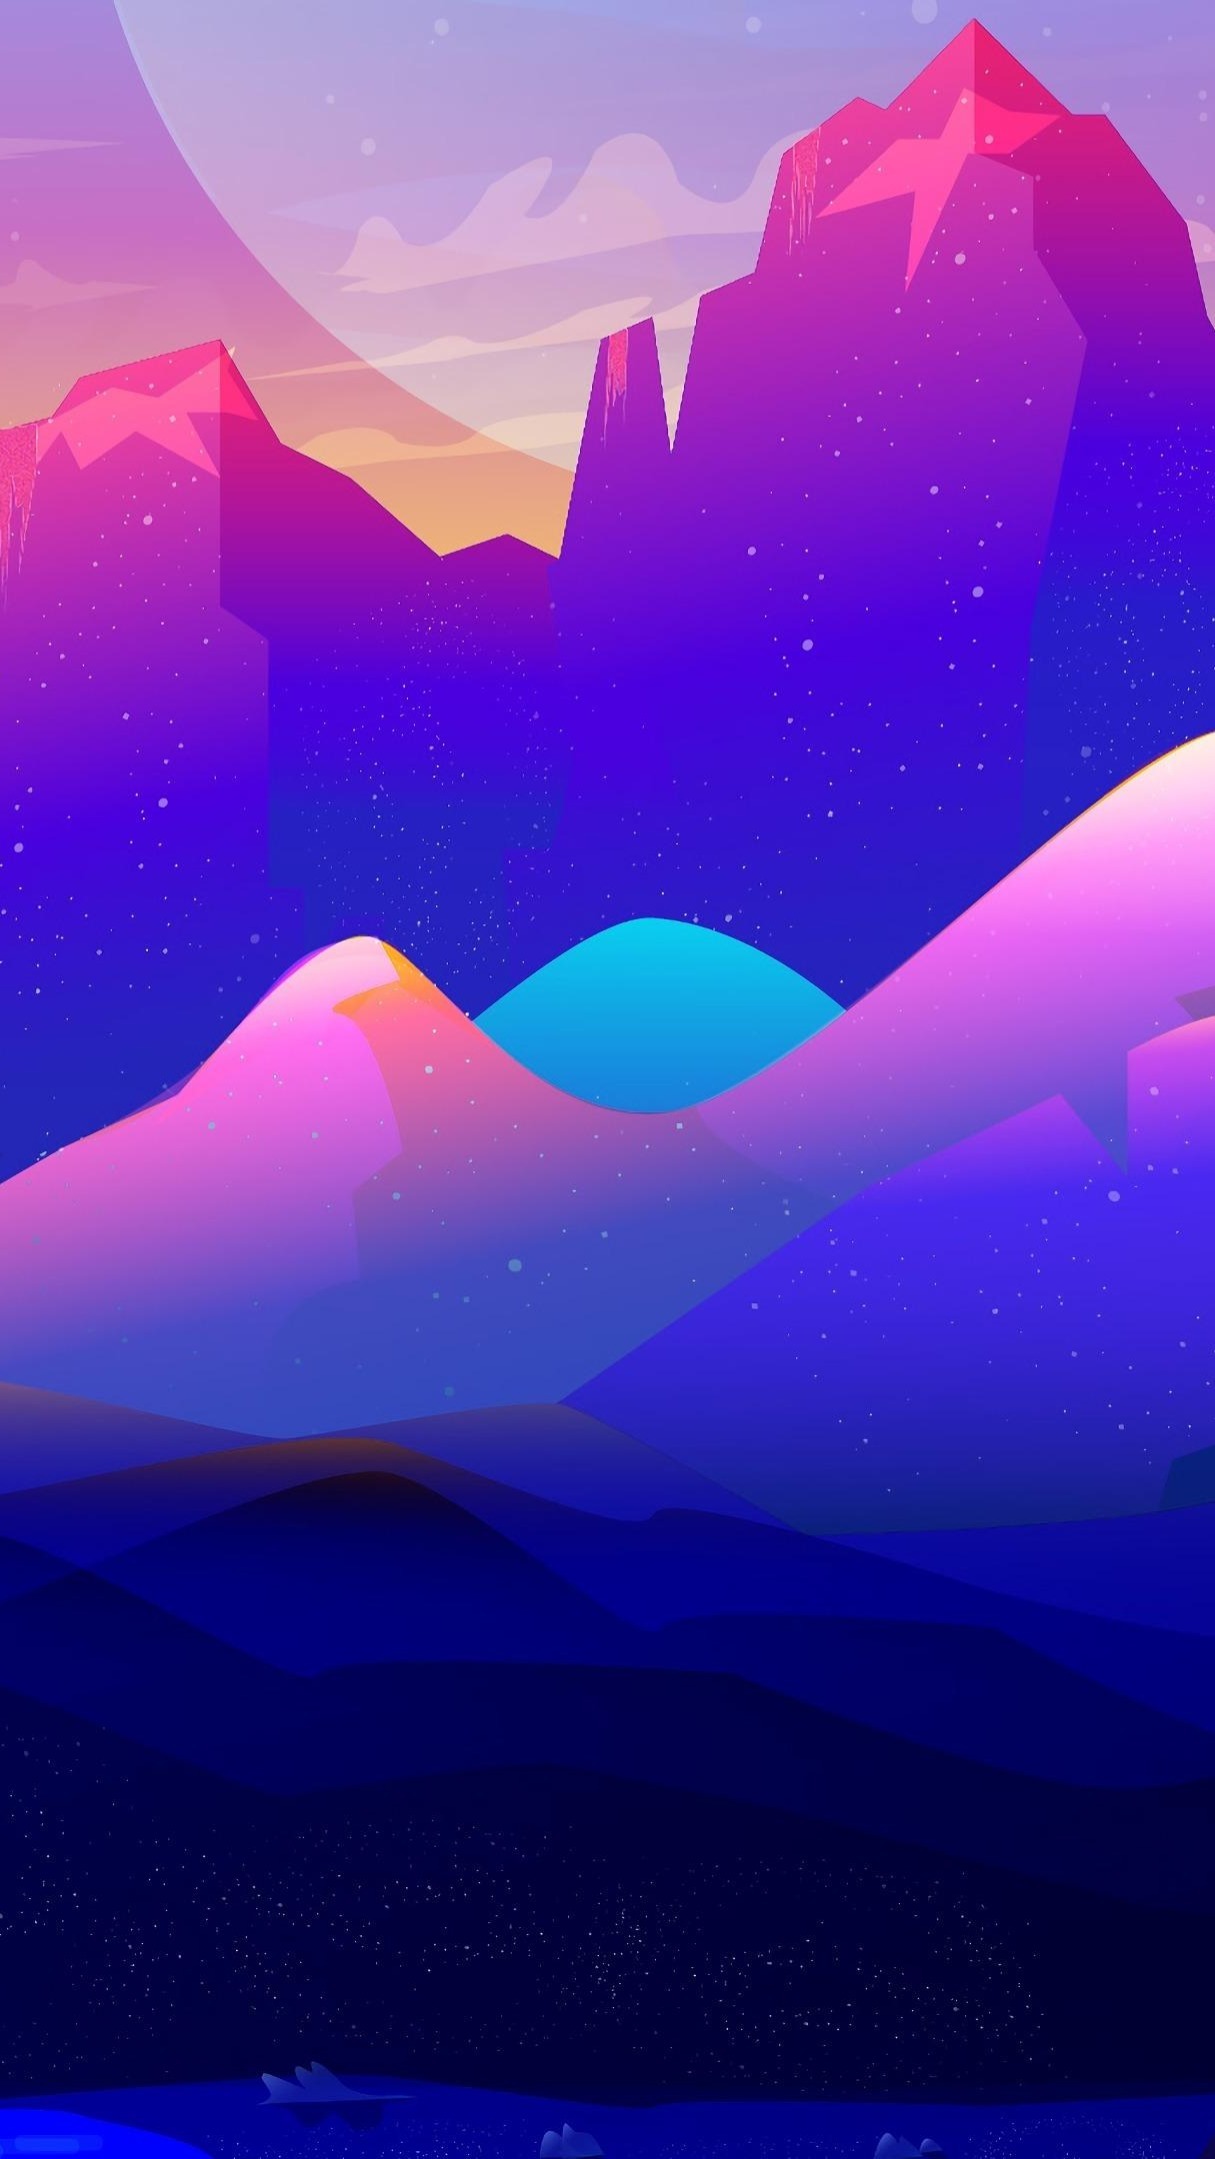 Purple mountains digital illustration - backiee